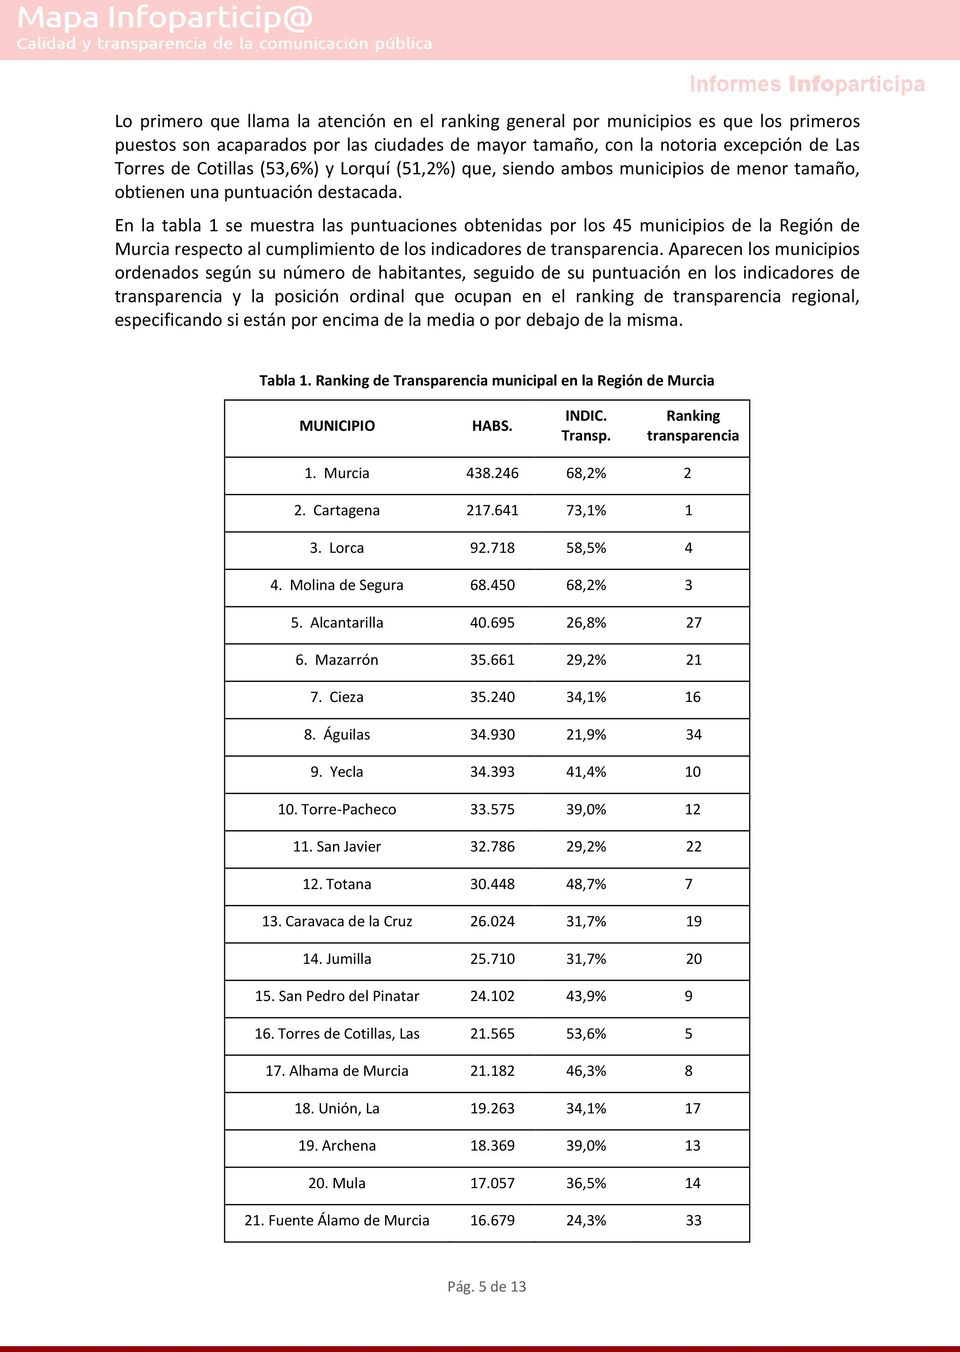 En la tabla 1 se muestra las puntuaciones obtenidas por los 45 municipios de la Región de Murcia respecto al cumplimiento de los indicadores de transparencia.